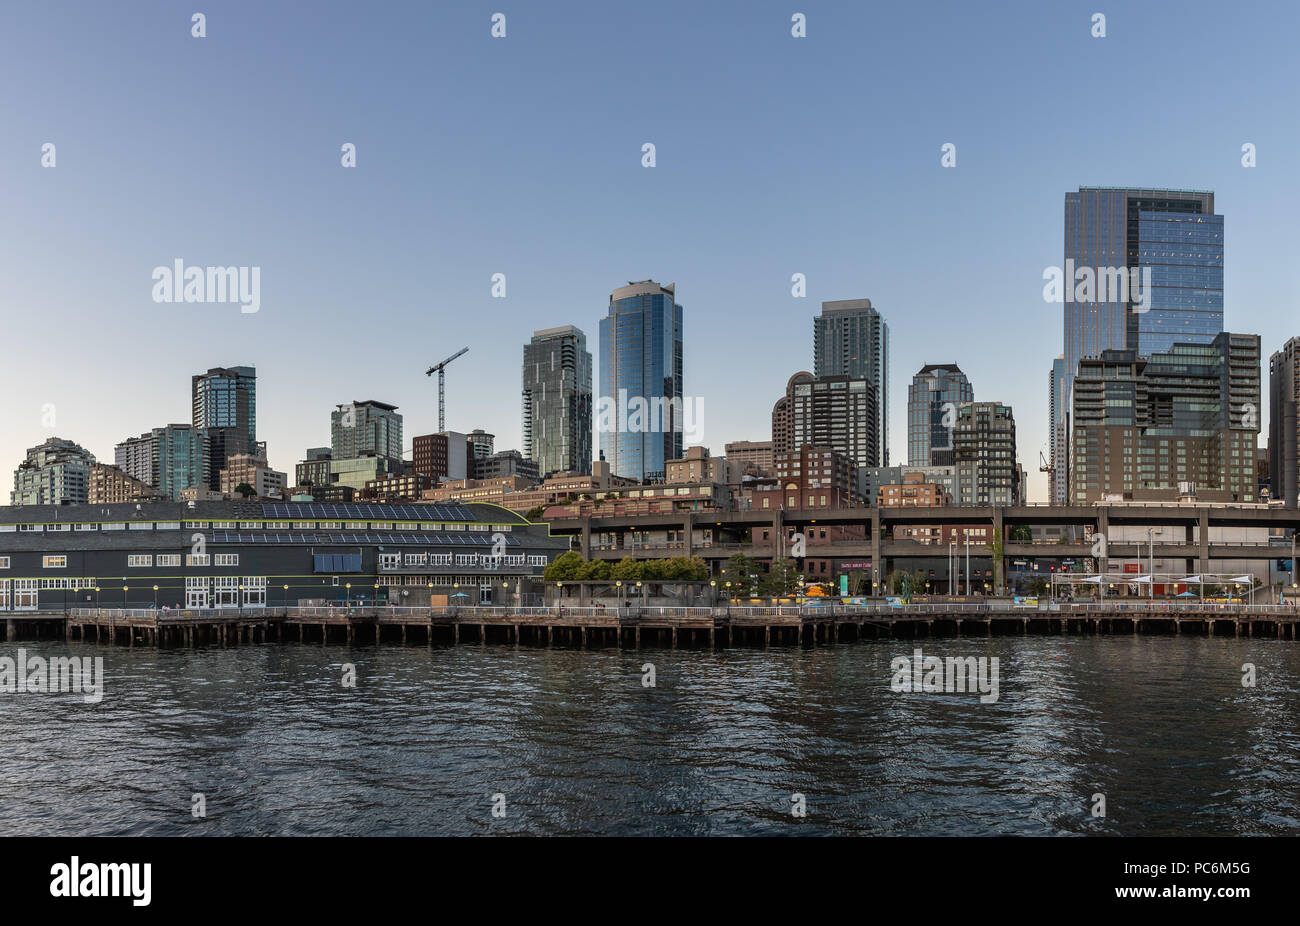 SEATTLE, WA, USA - 24 juillet : Centre-ville de Seattle et le front de mer le 14 juillet 2018 à Seattle, Washington. Banque D'Images